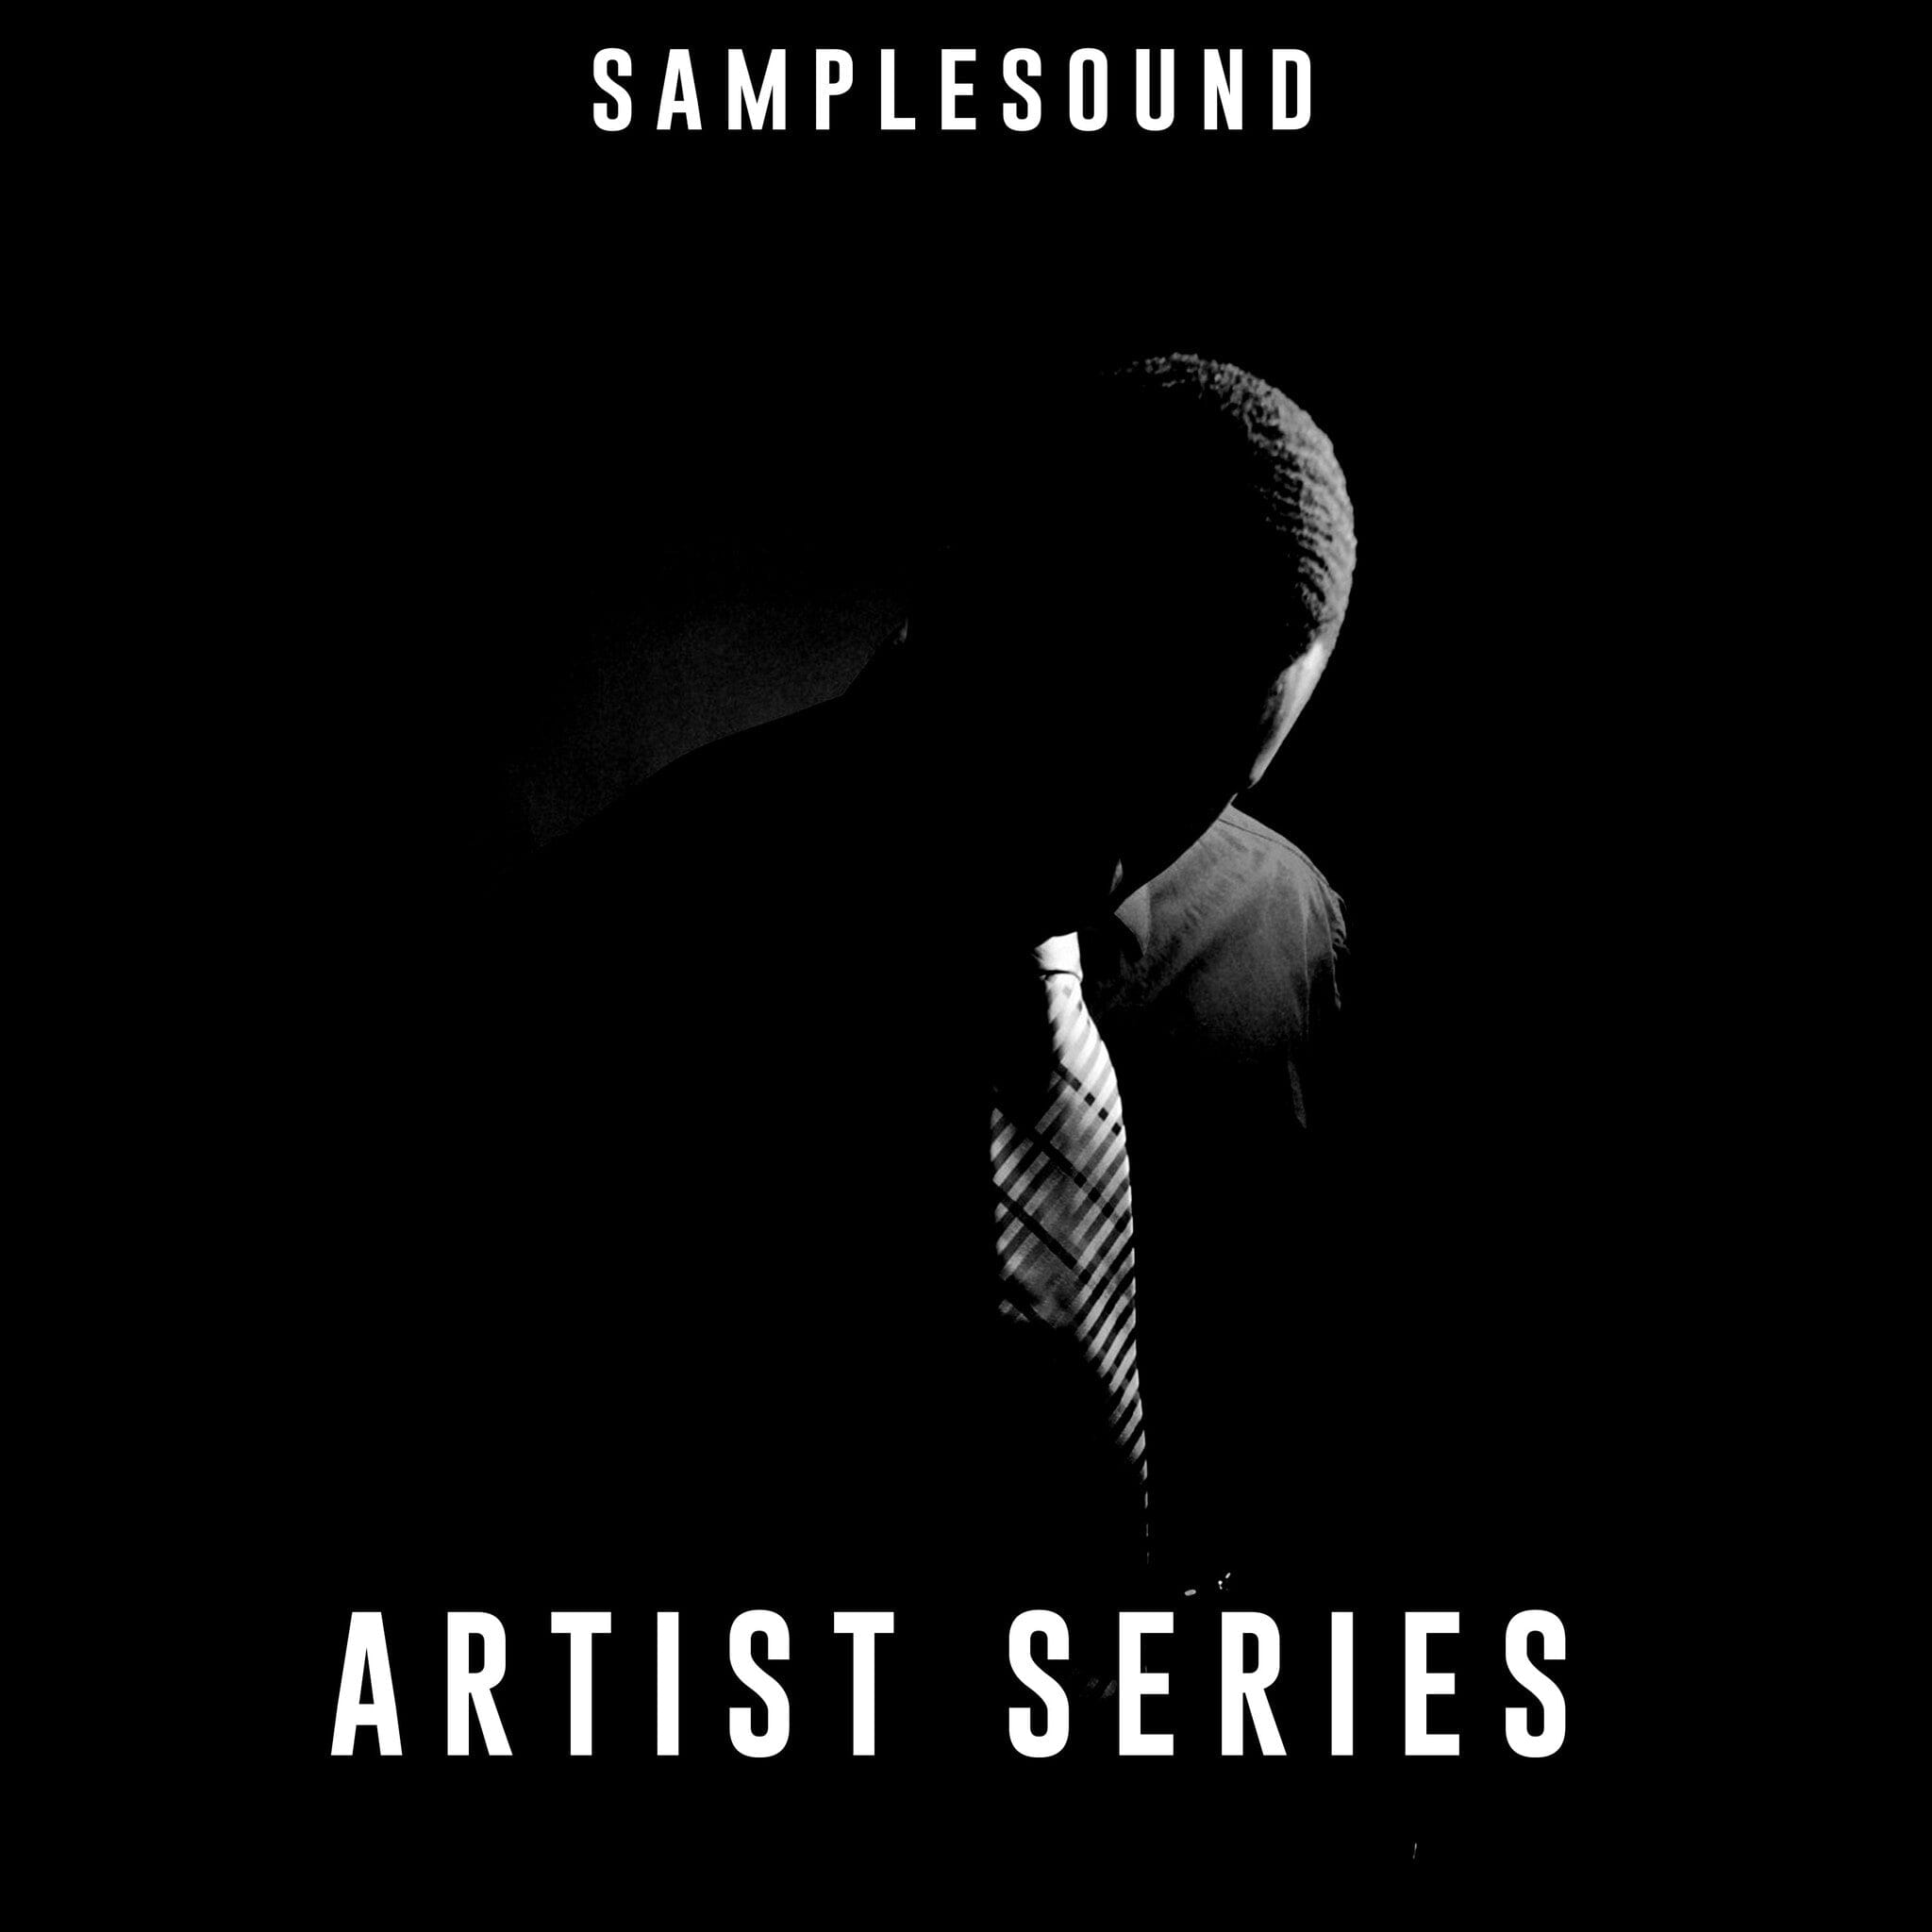 Samplesound "Artist Series" is coming soon